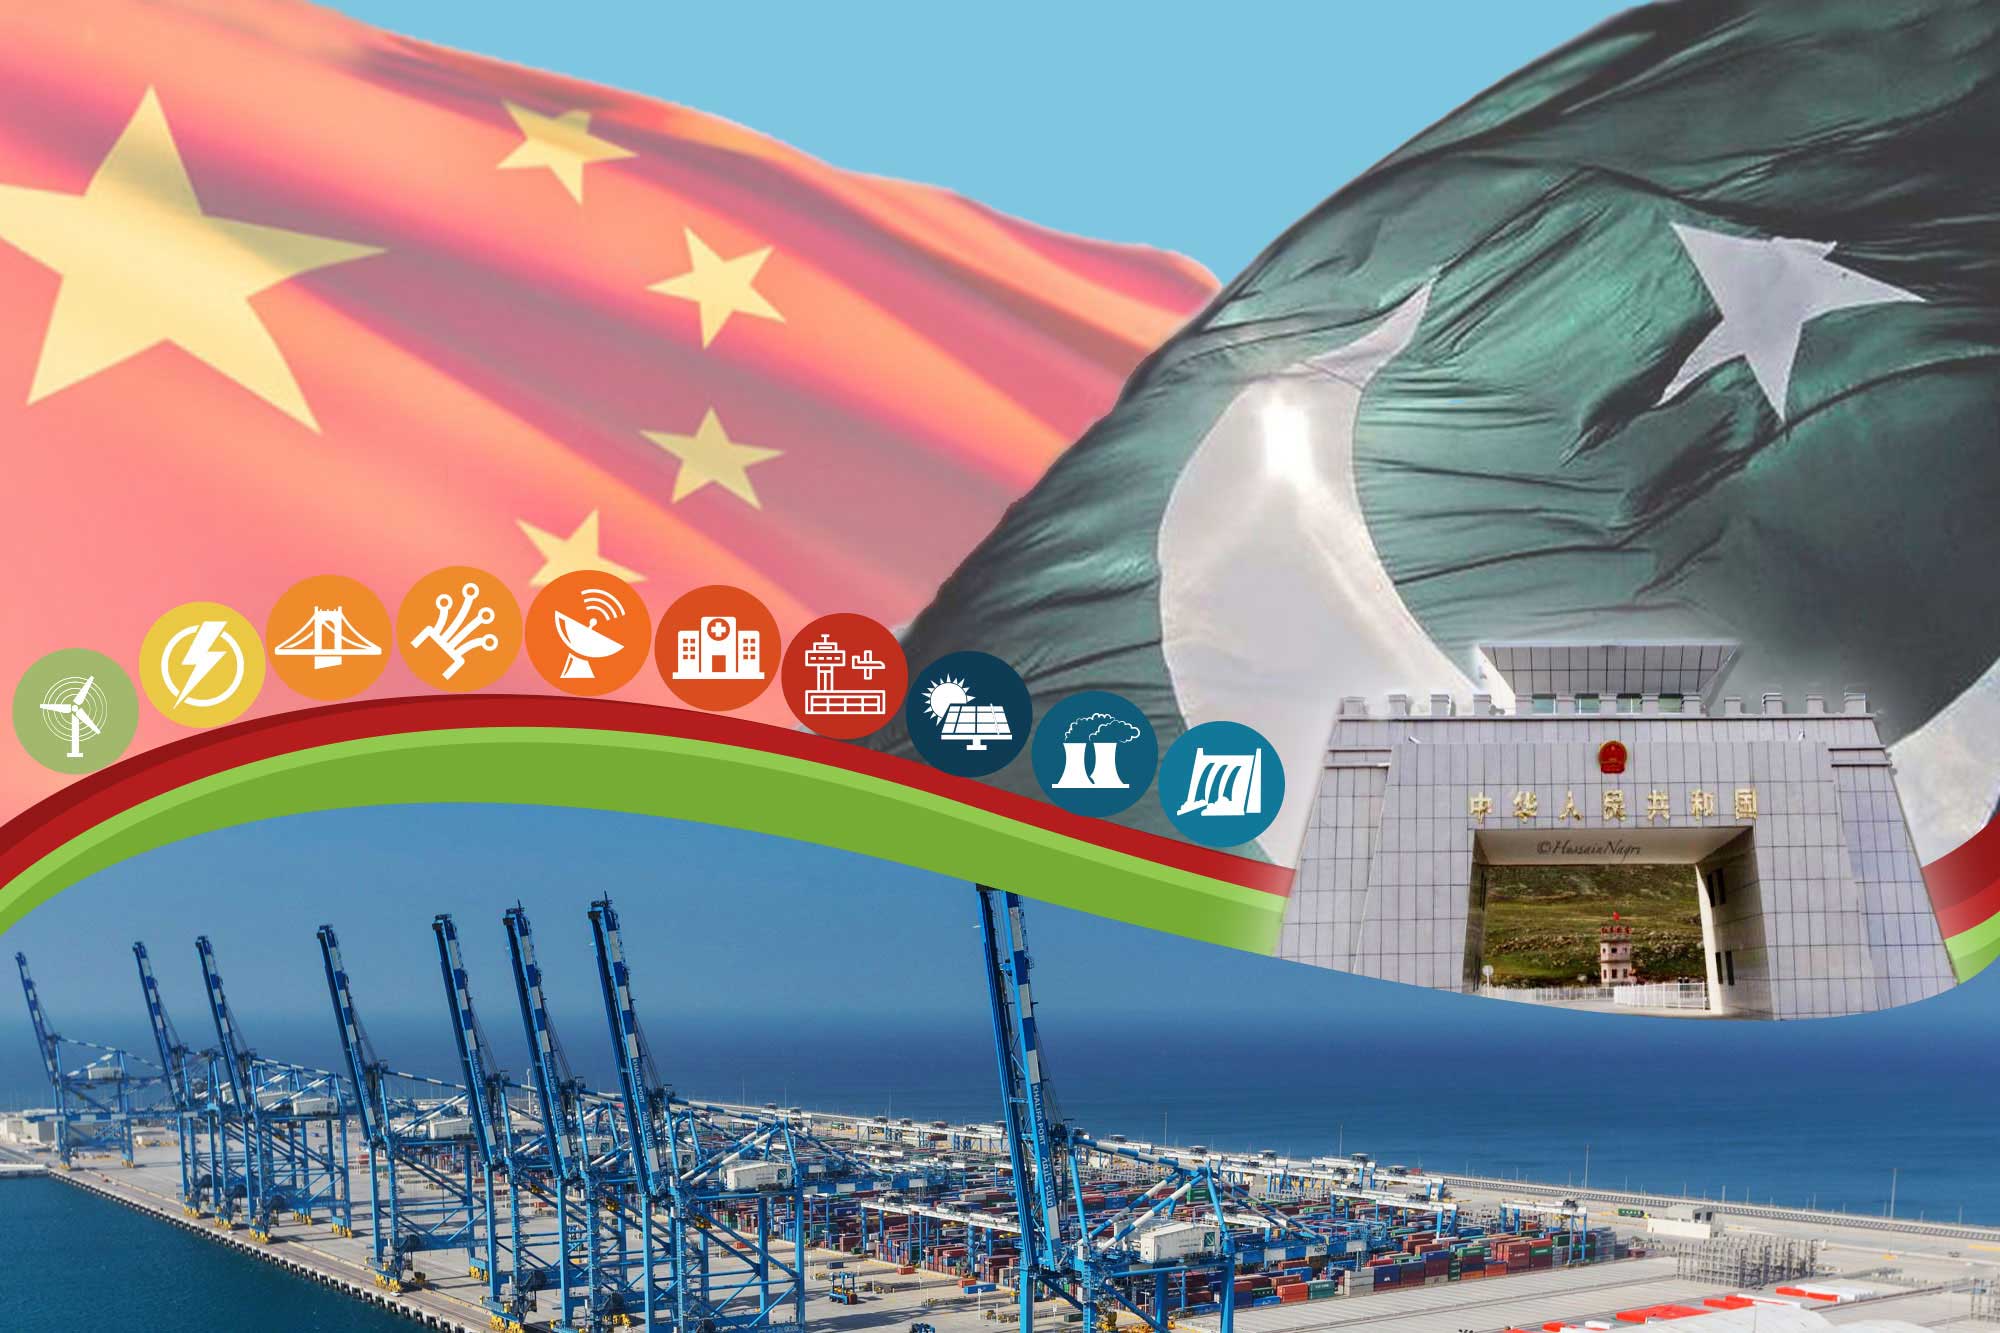 پاکستان میں چینی سفیر کا سی پیک پر جاری منصوبوں پر اطمینان کا اظہار